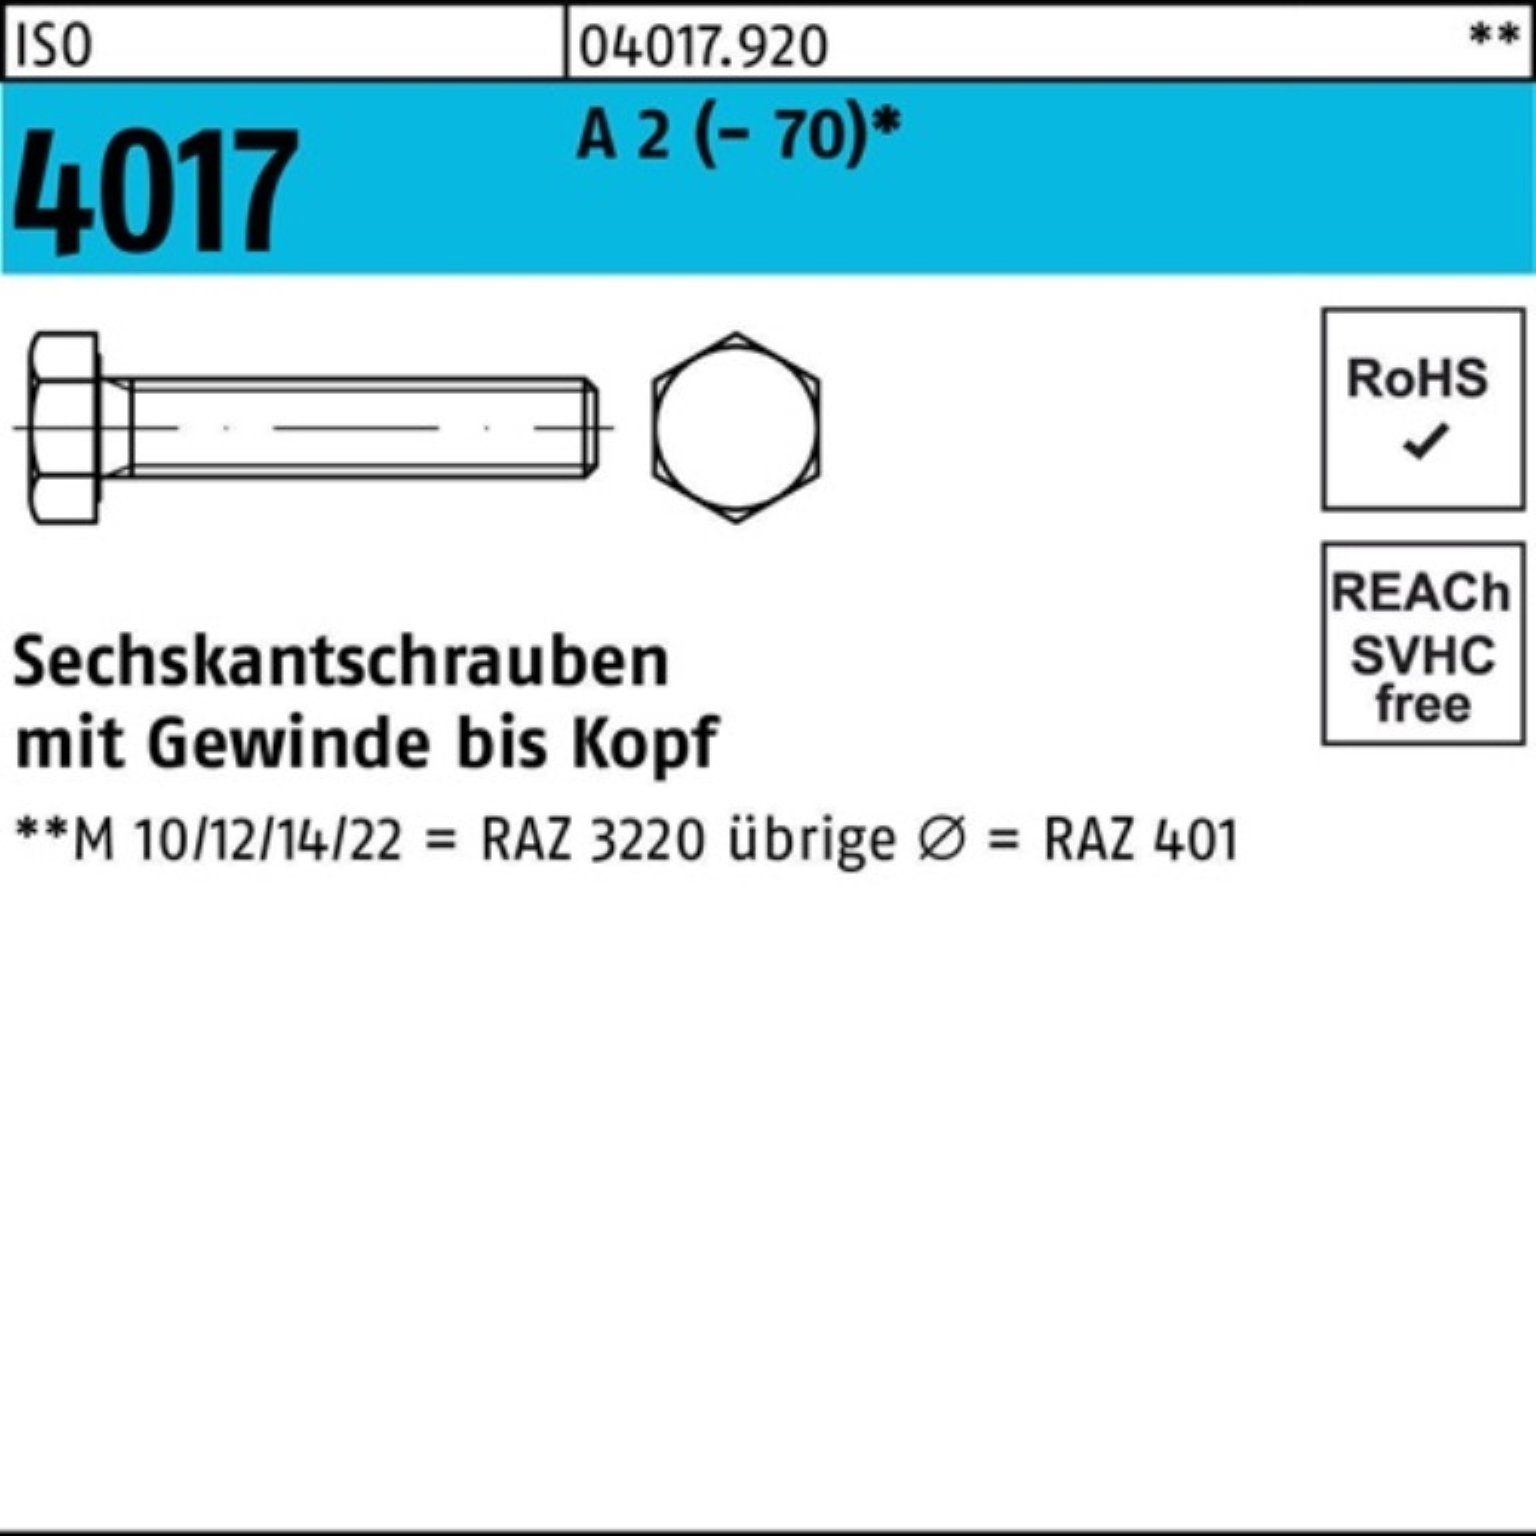 Bufab Sechskantschraube 100er Pack Sechskantschraube ISO 4017 VG M20x 40 A 2 (70) 25 Stück